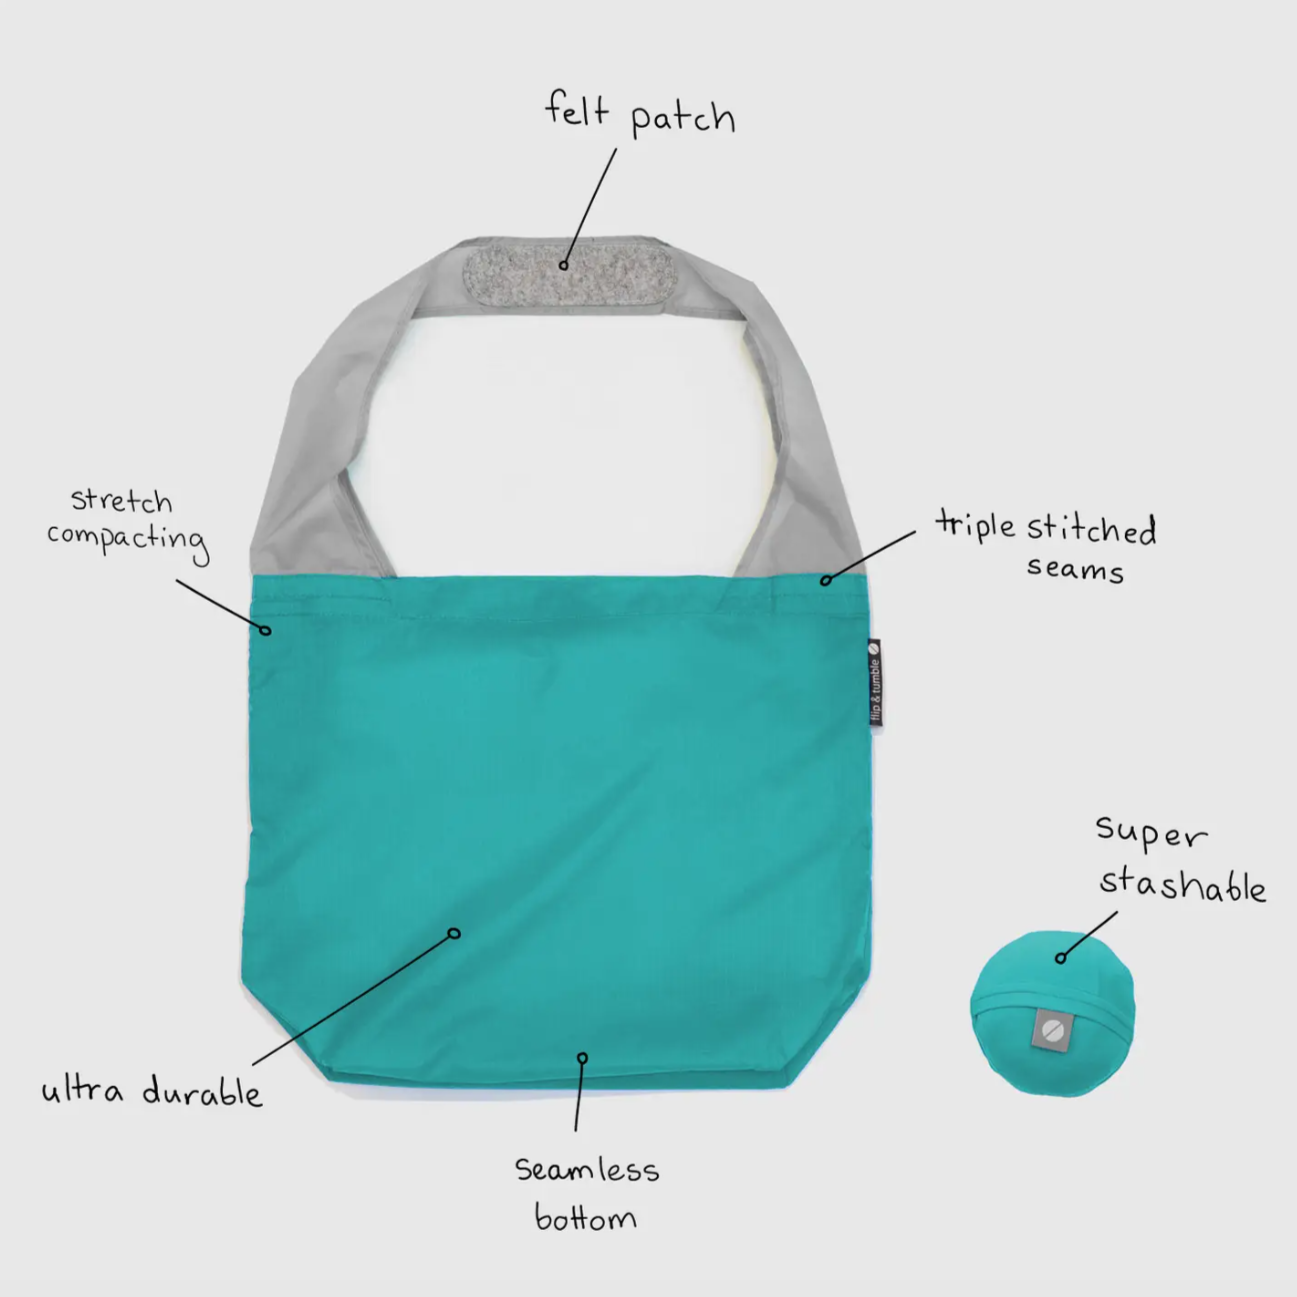 Flip & Tumble Reusable Bag - Teal